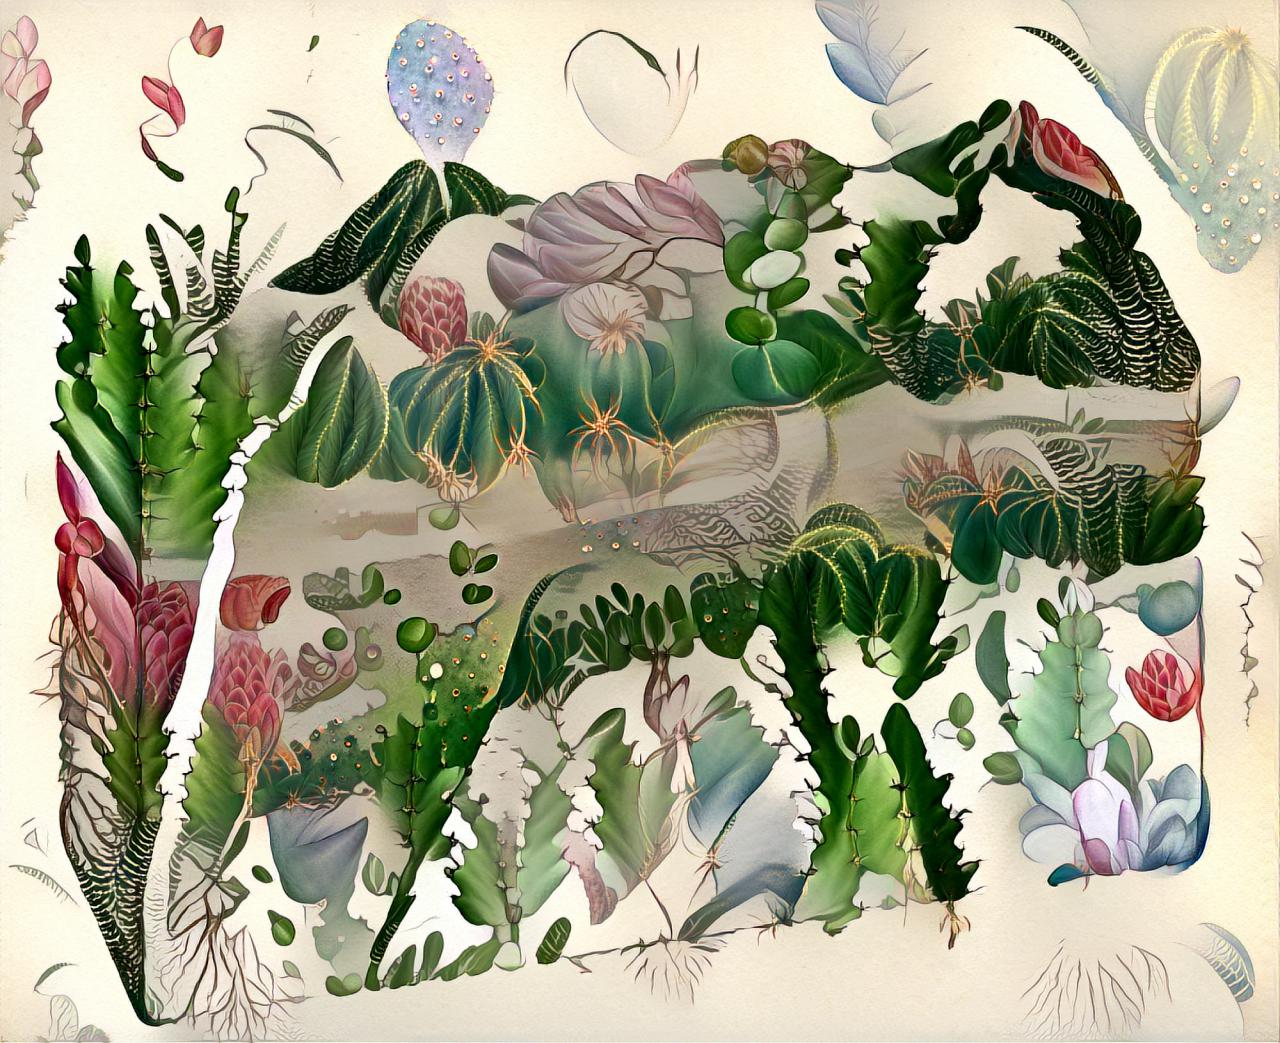 Die Zeichnung ist durch einen Algorithmus animiert, der den Querschnitt des Bodens zeigt, aber anstatt Sedimente eine tiefe Verzahnung zwischen Tieren und ihrer Umgebung.